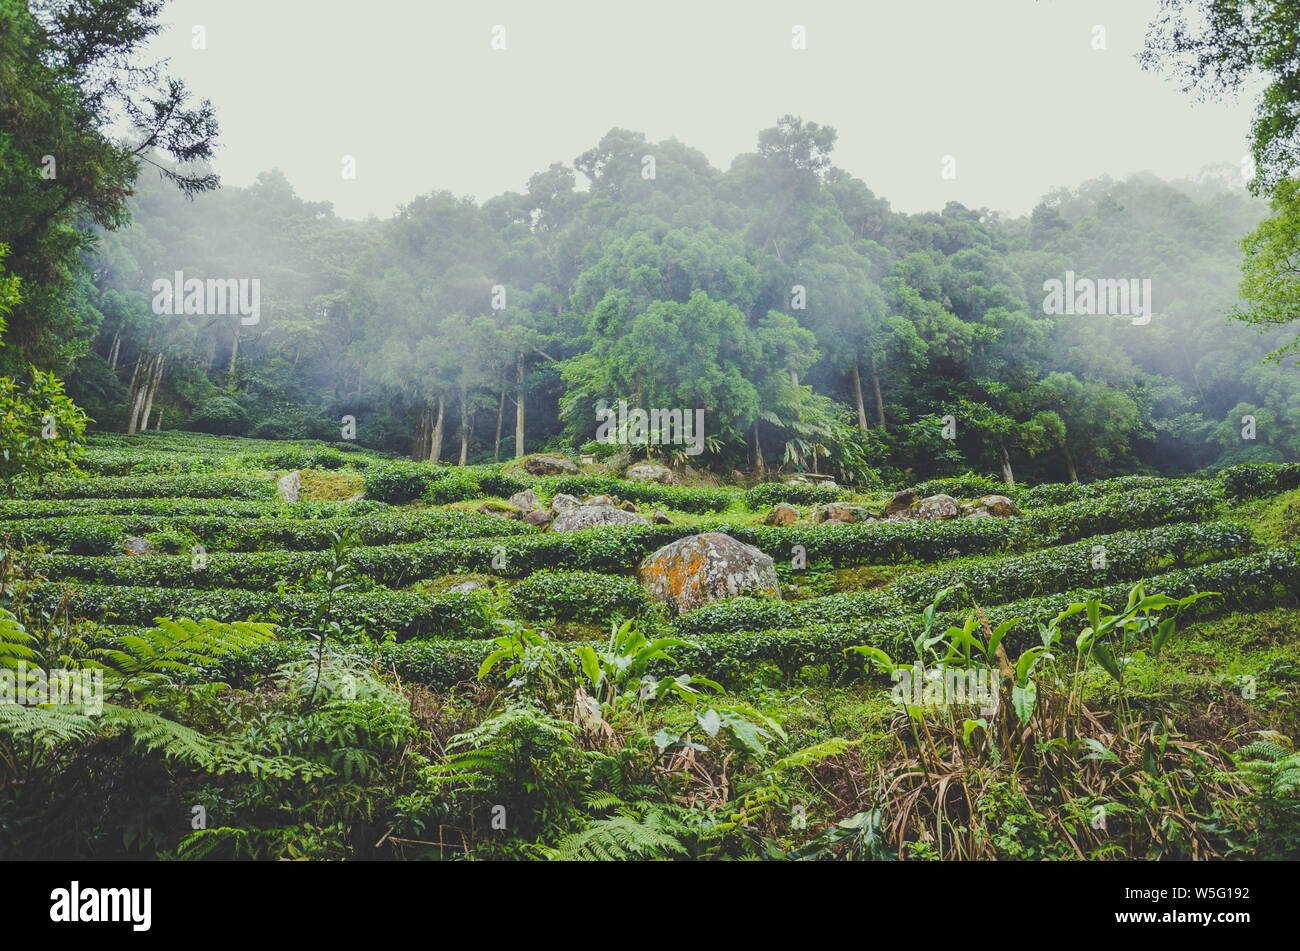 Moody Landschaft mit terrassenförmig angelegten Teeplantagen von tropischem Wald umgeben. In Taiwan, Asien fotografiert. Neblige Landschaften. Nebel, Nebel. Hipster, Vintage Retro Style. Stockfoto